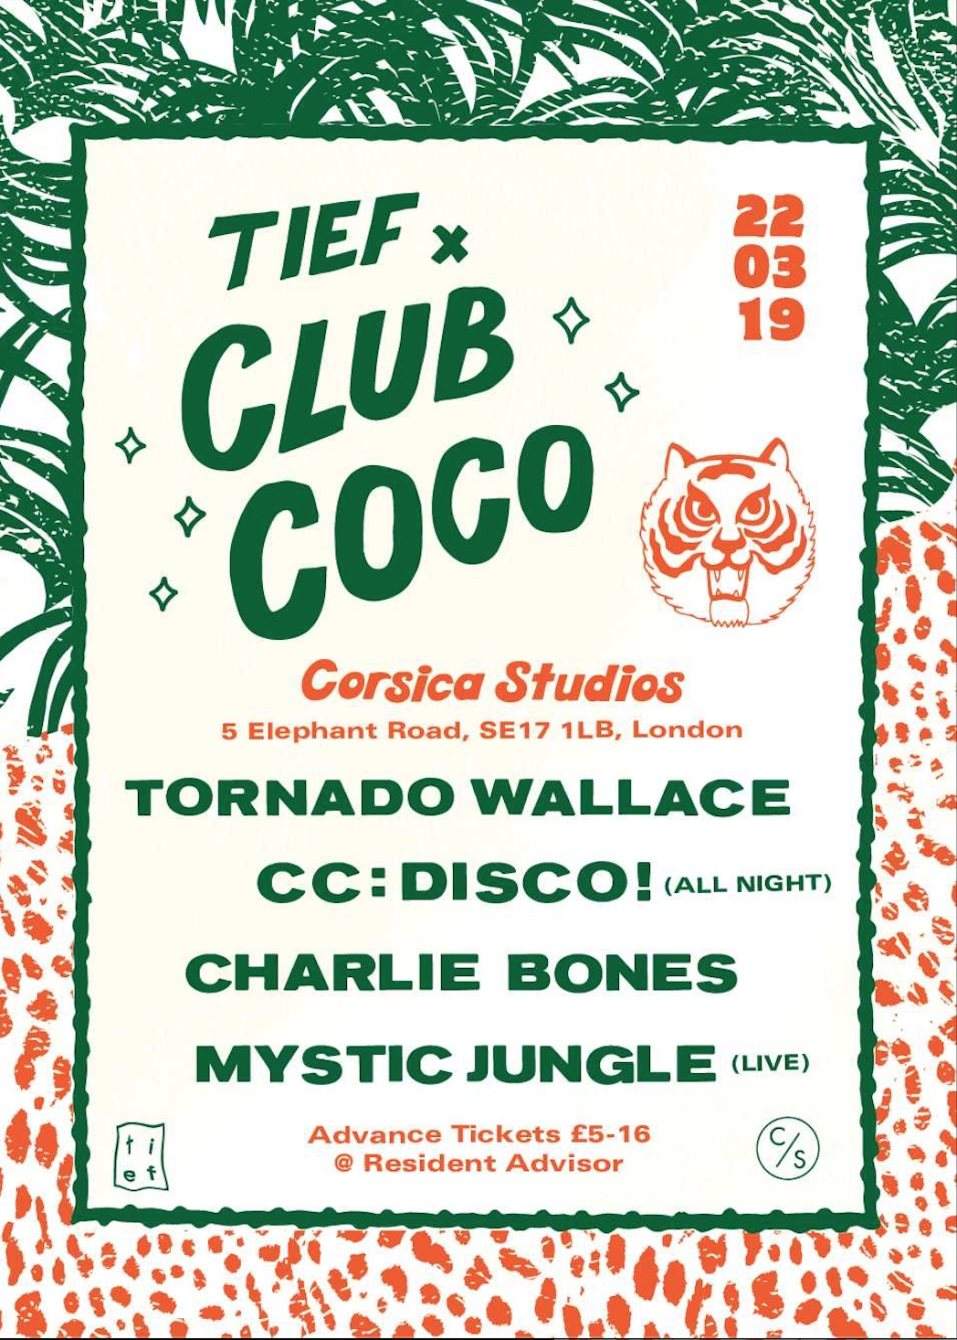 Tief X Club Coco with Tornado Wallace, CC:Disco, Mystic Jungle & Charlie Bones - Página trasera